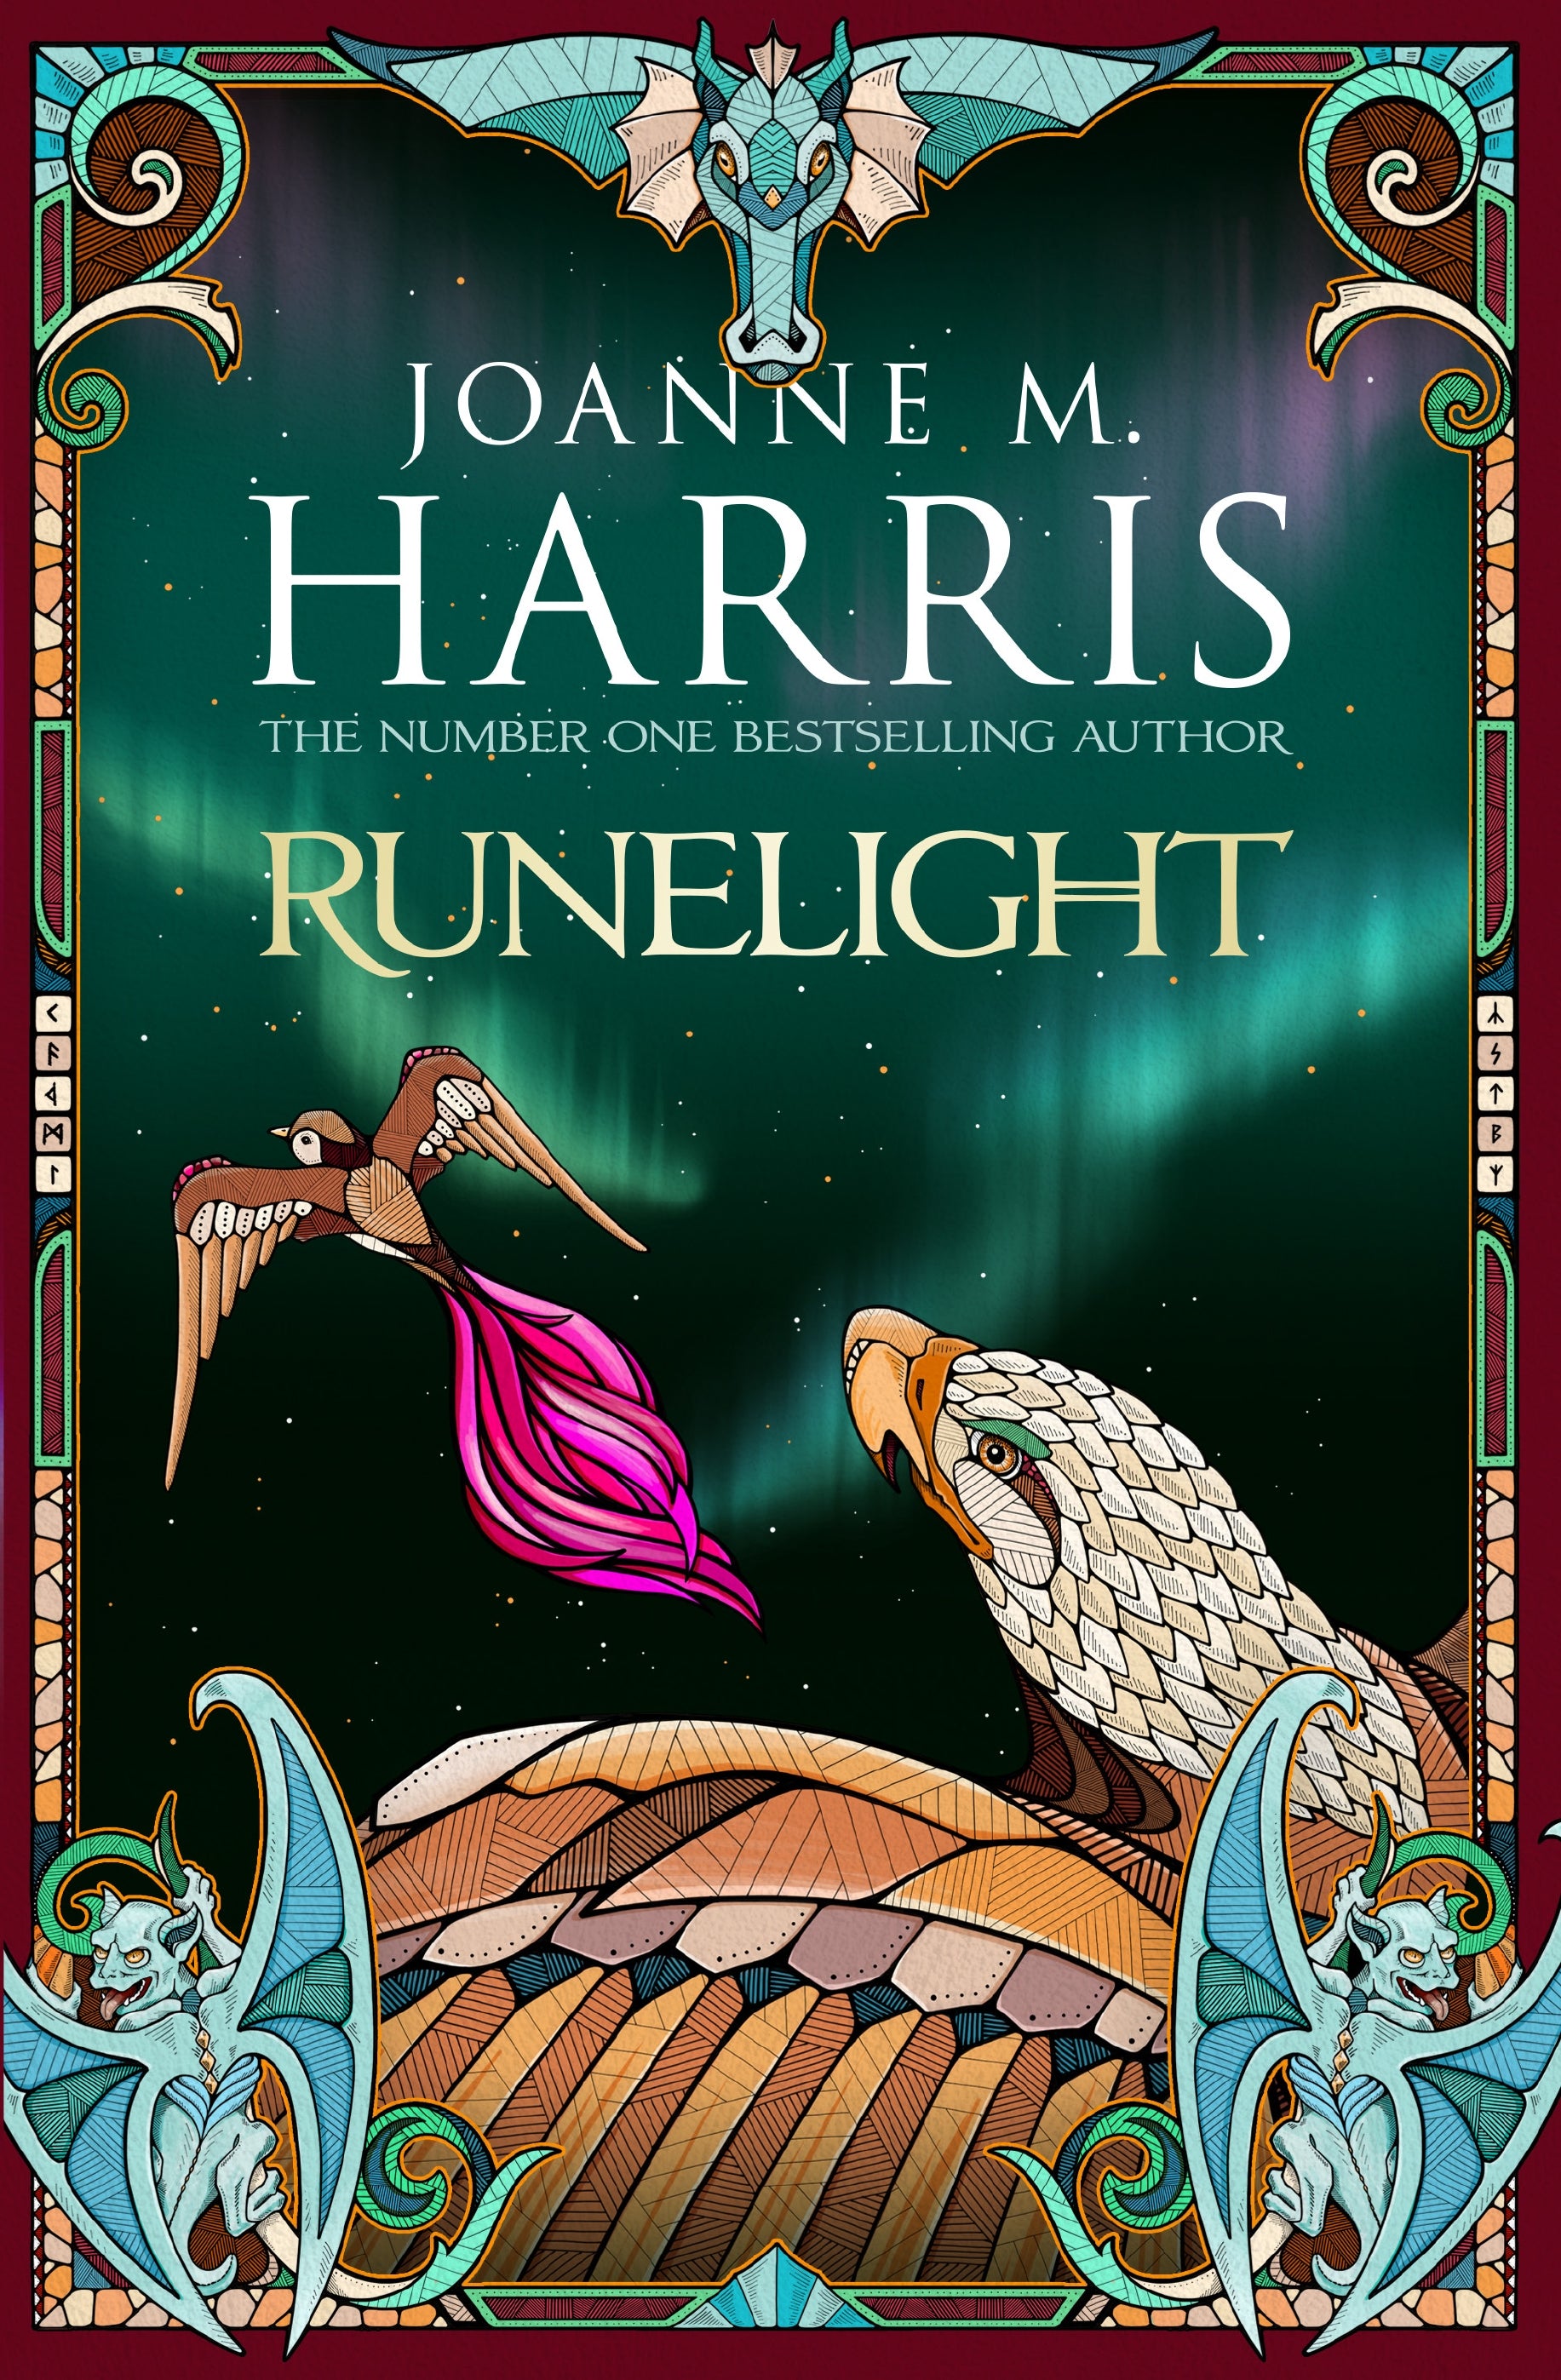 Runelight by Joanne Harris